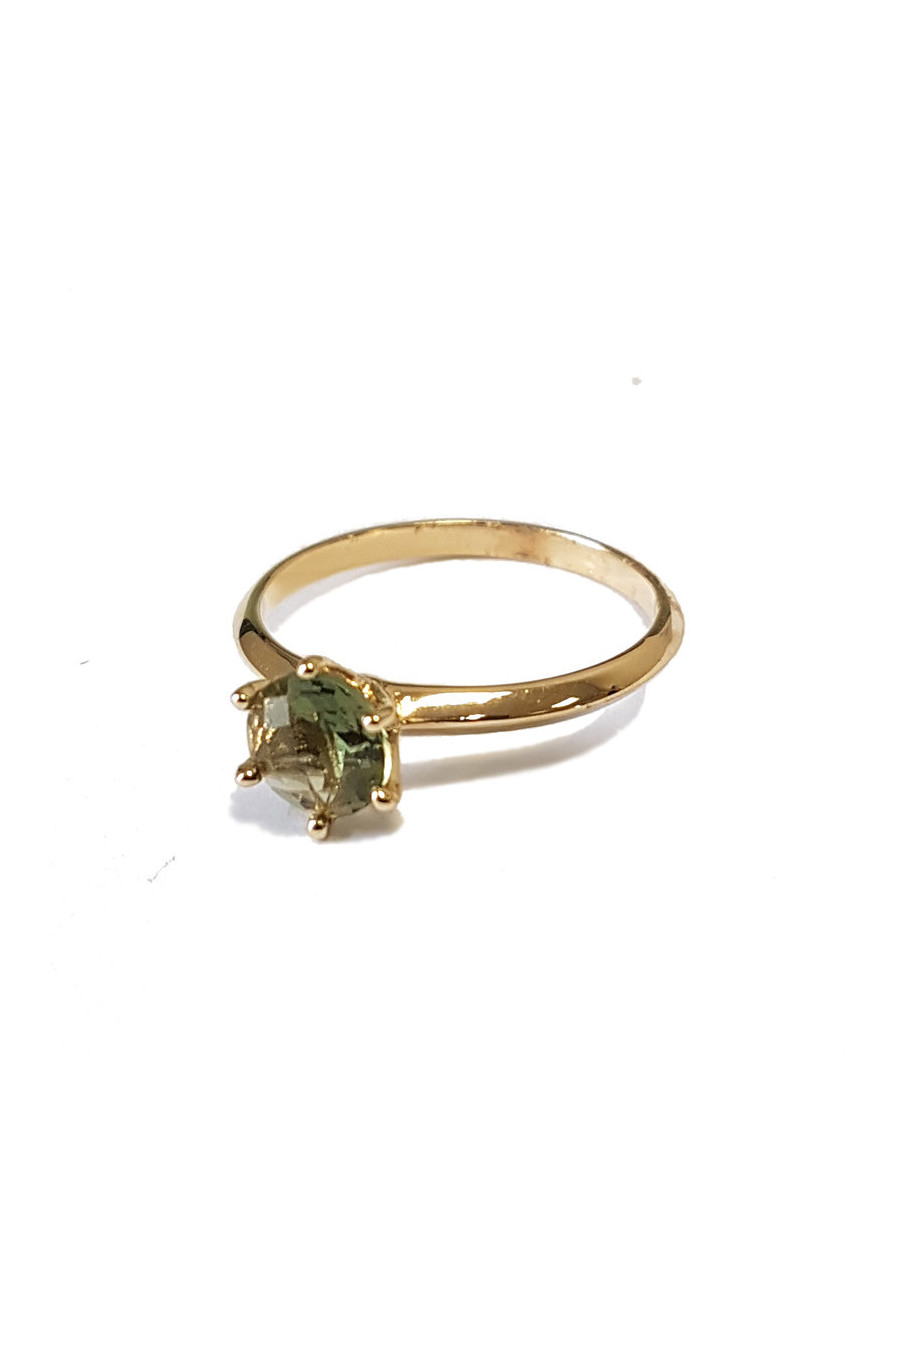 Gold ring , moldavite